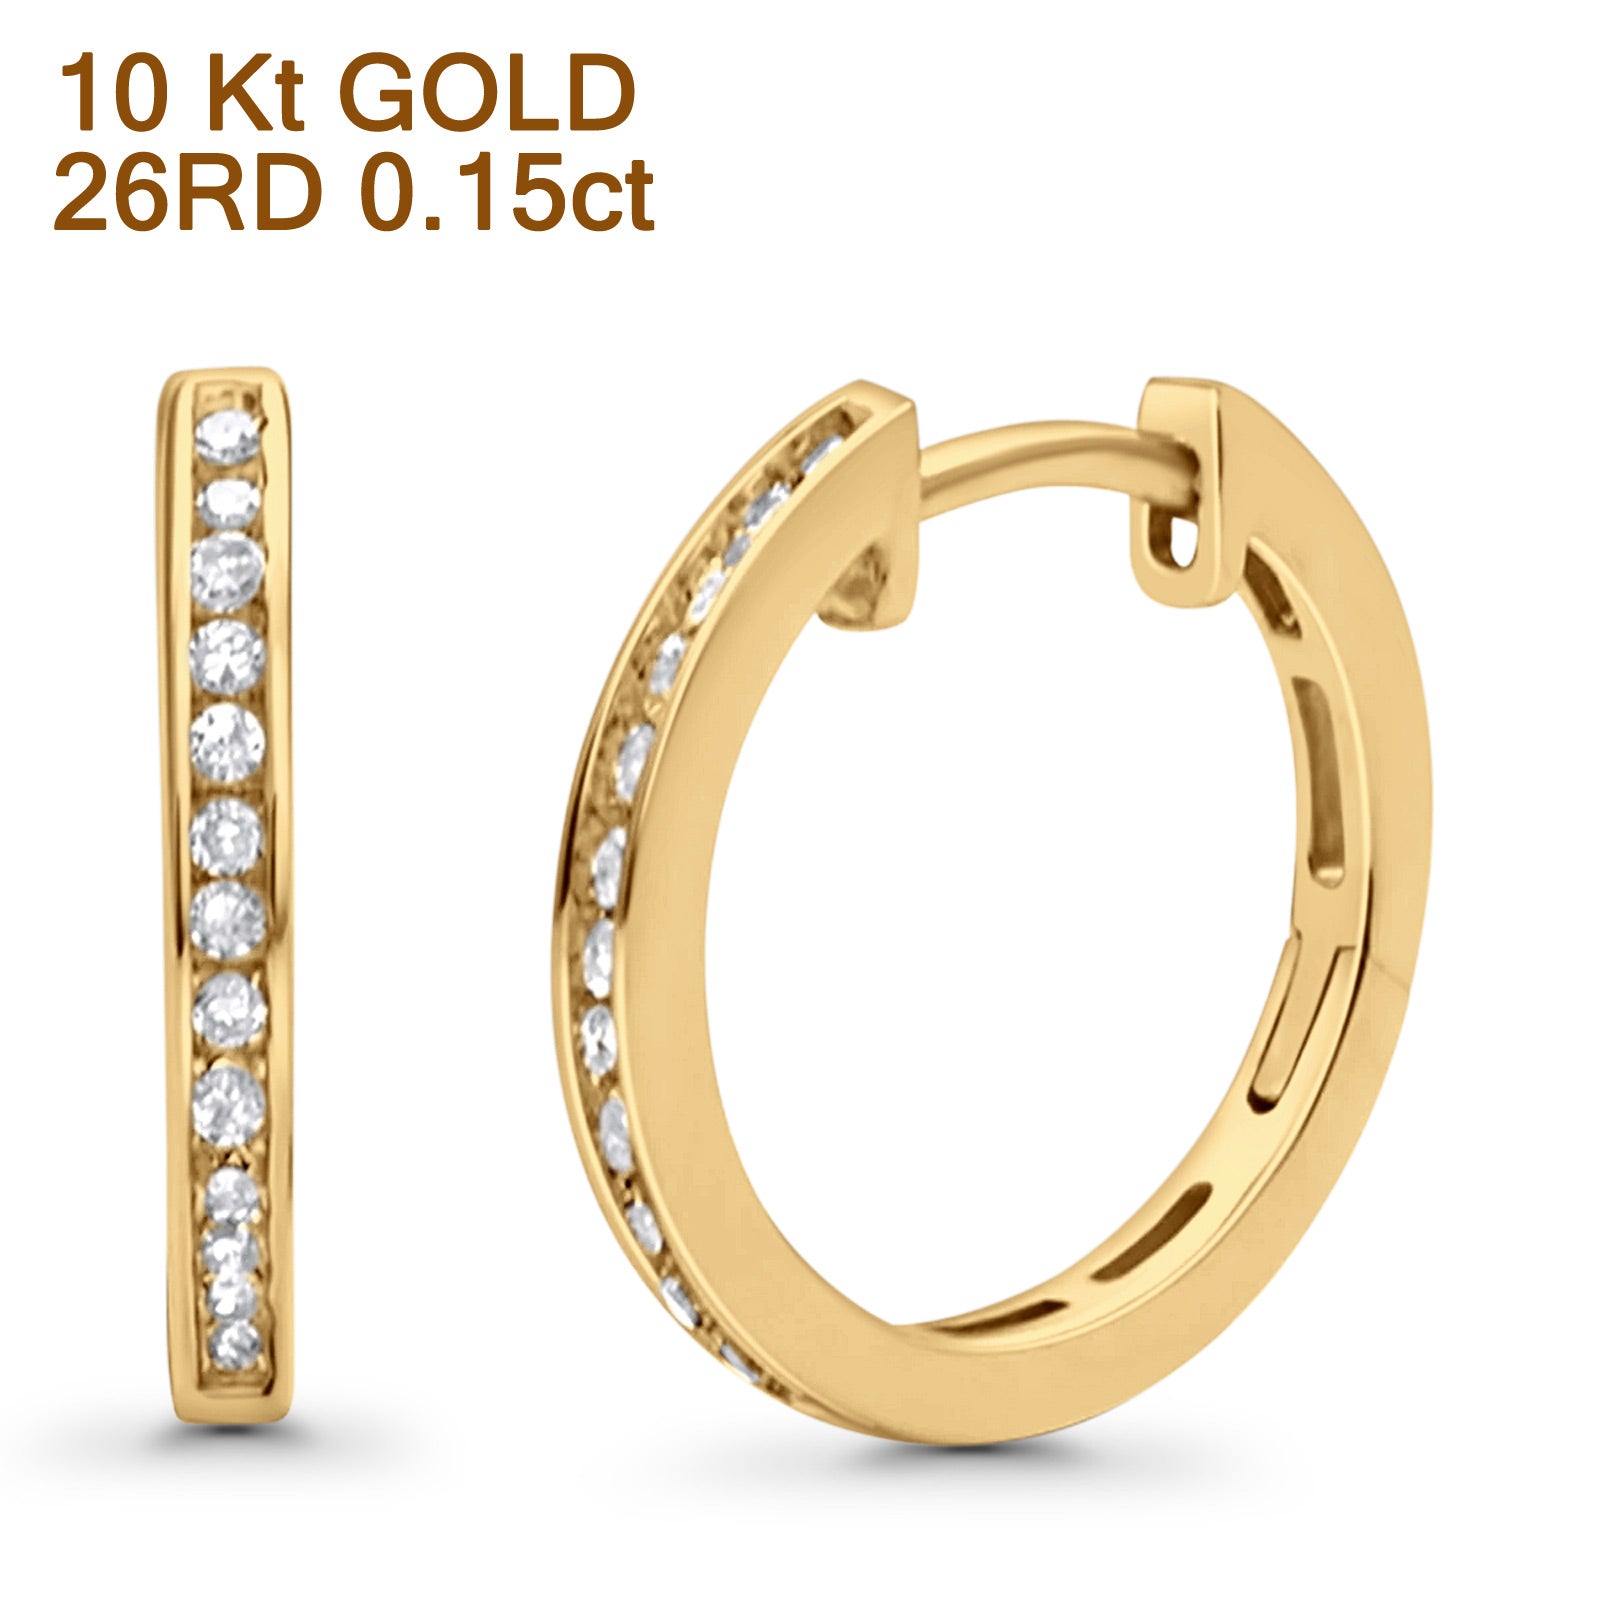 Solid 10K Gold 12.7mm Channel Set Hinged Natural Diamond Huggie Hoop Earrings